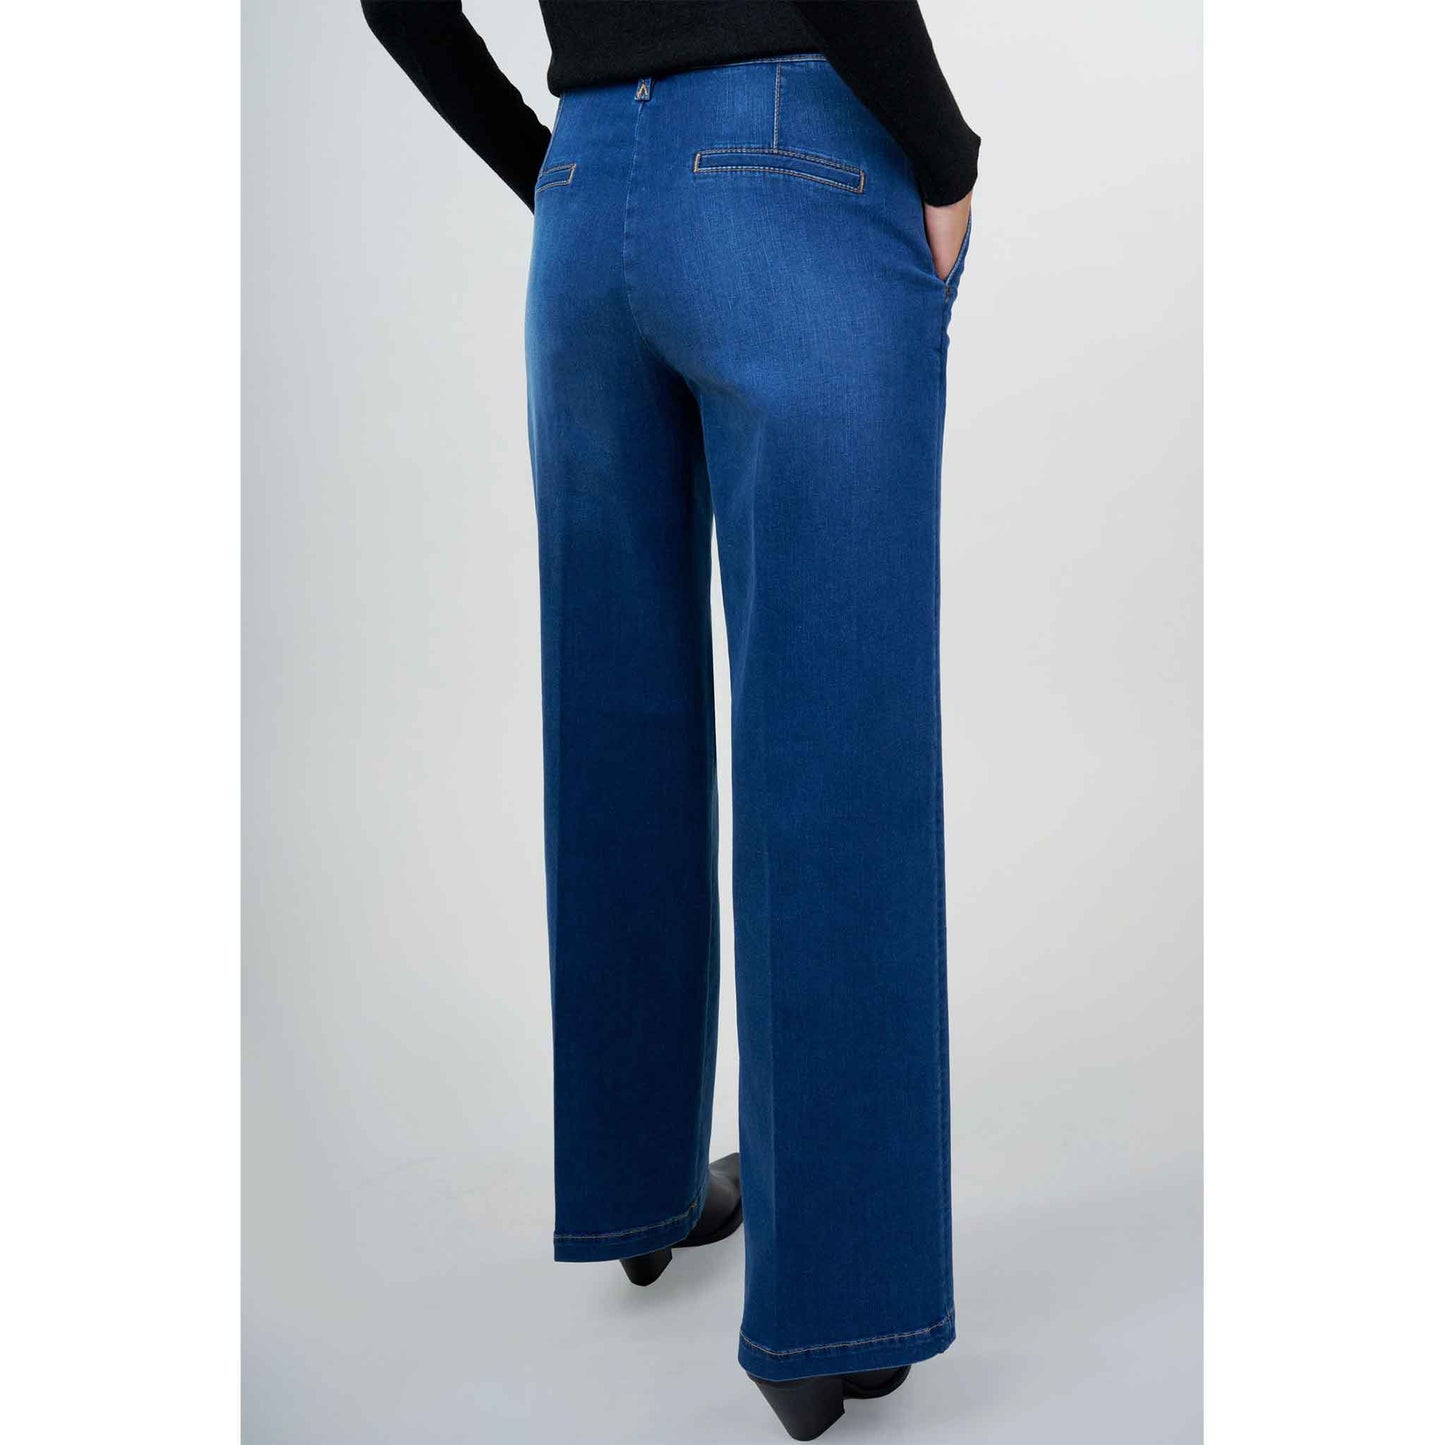 fashion tall woman bluefire jeans marlene pure blue